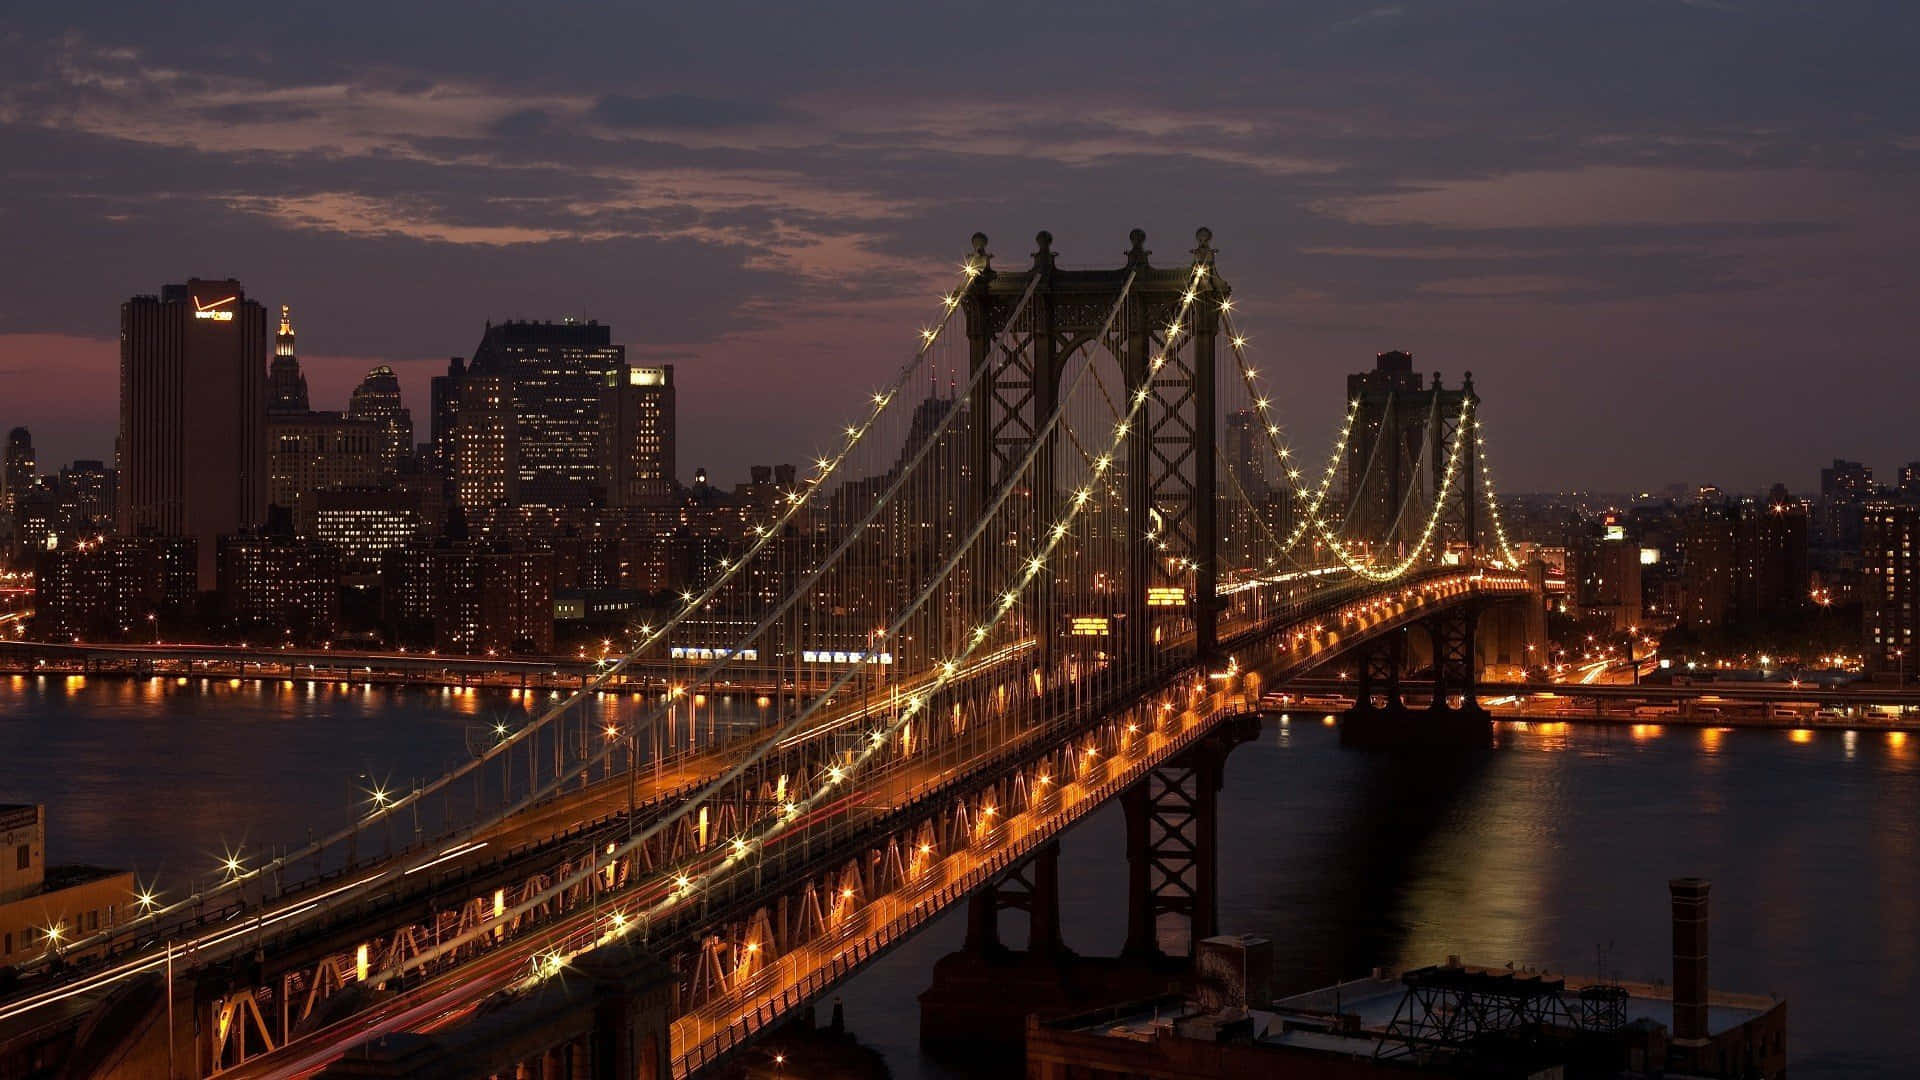 Imagendel Puente De Manhattan En La Ciudad De Nueva York De Noche